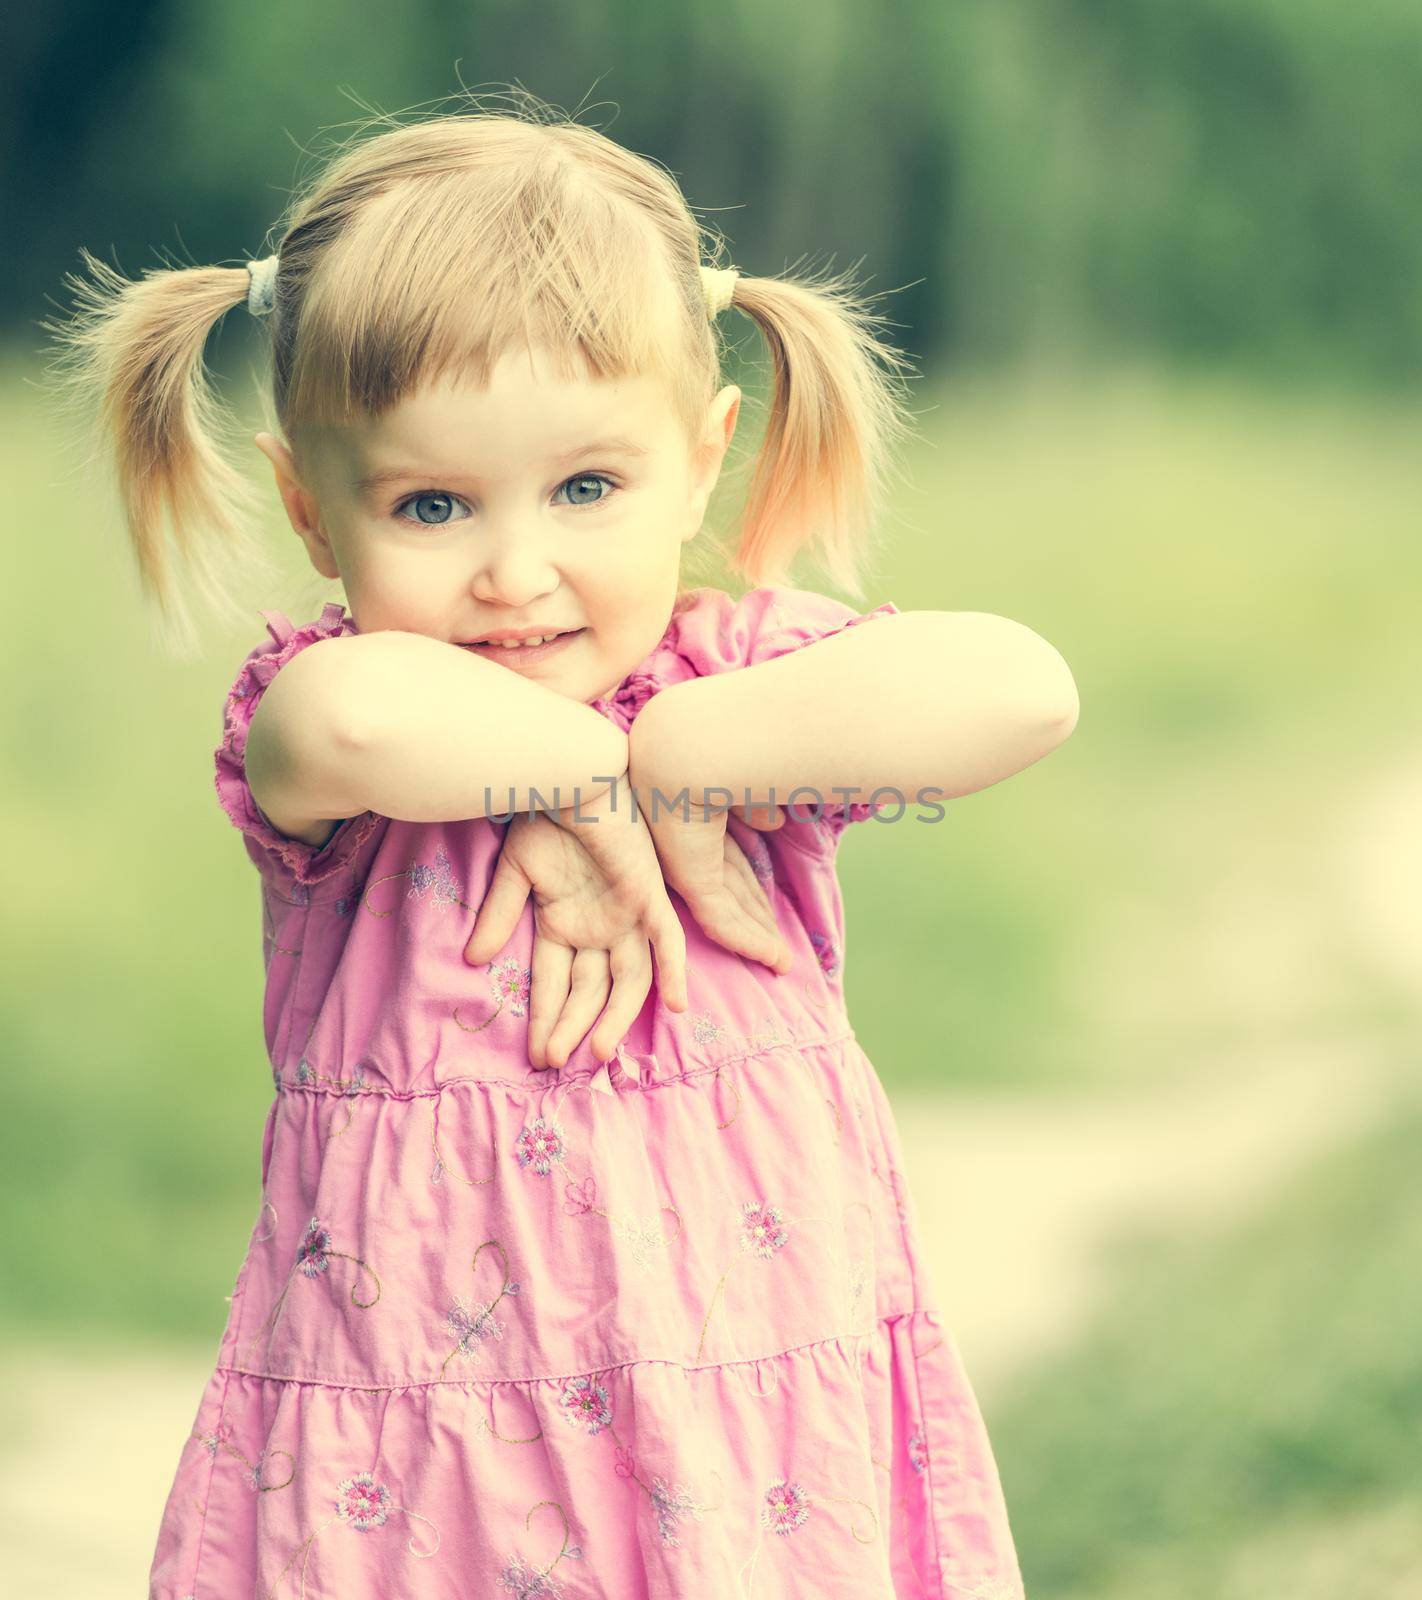 Cute little girl on the meadow by tan4ikk1